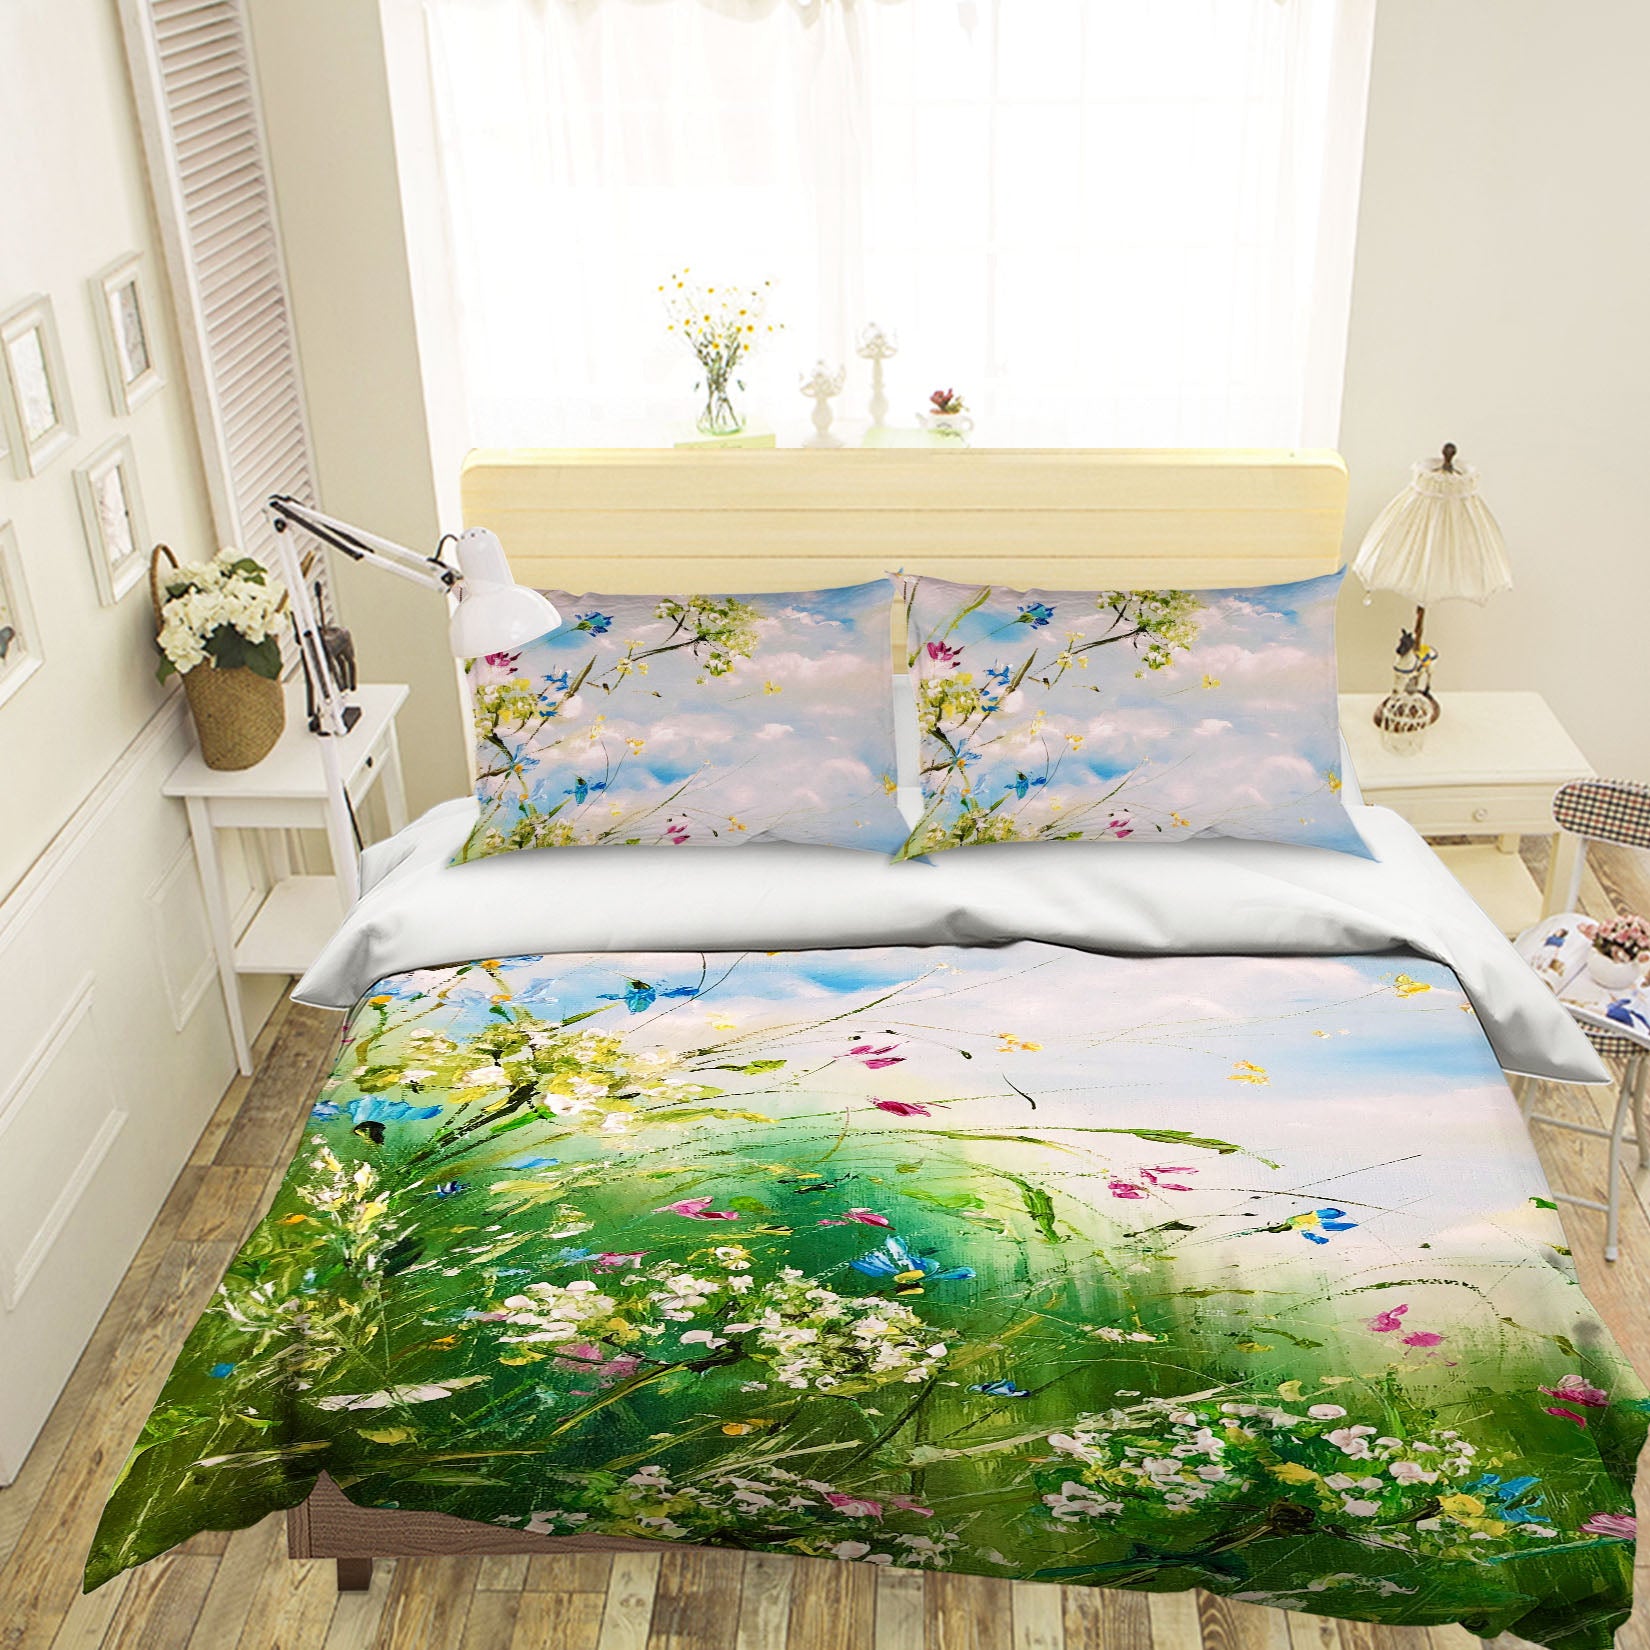 3D Cloud Garden 557 Skromova Marina Bedding Bed Pillowcases Quilt